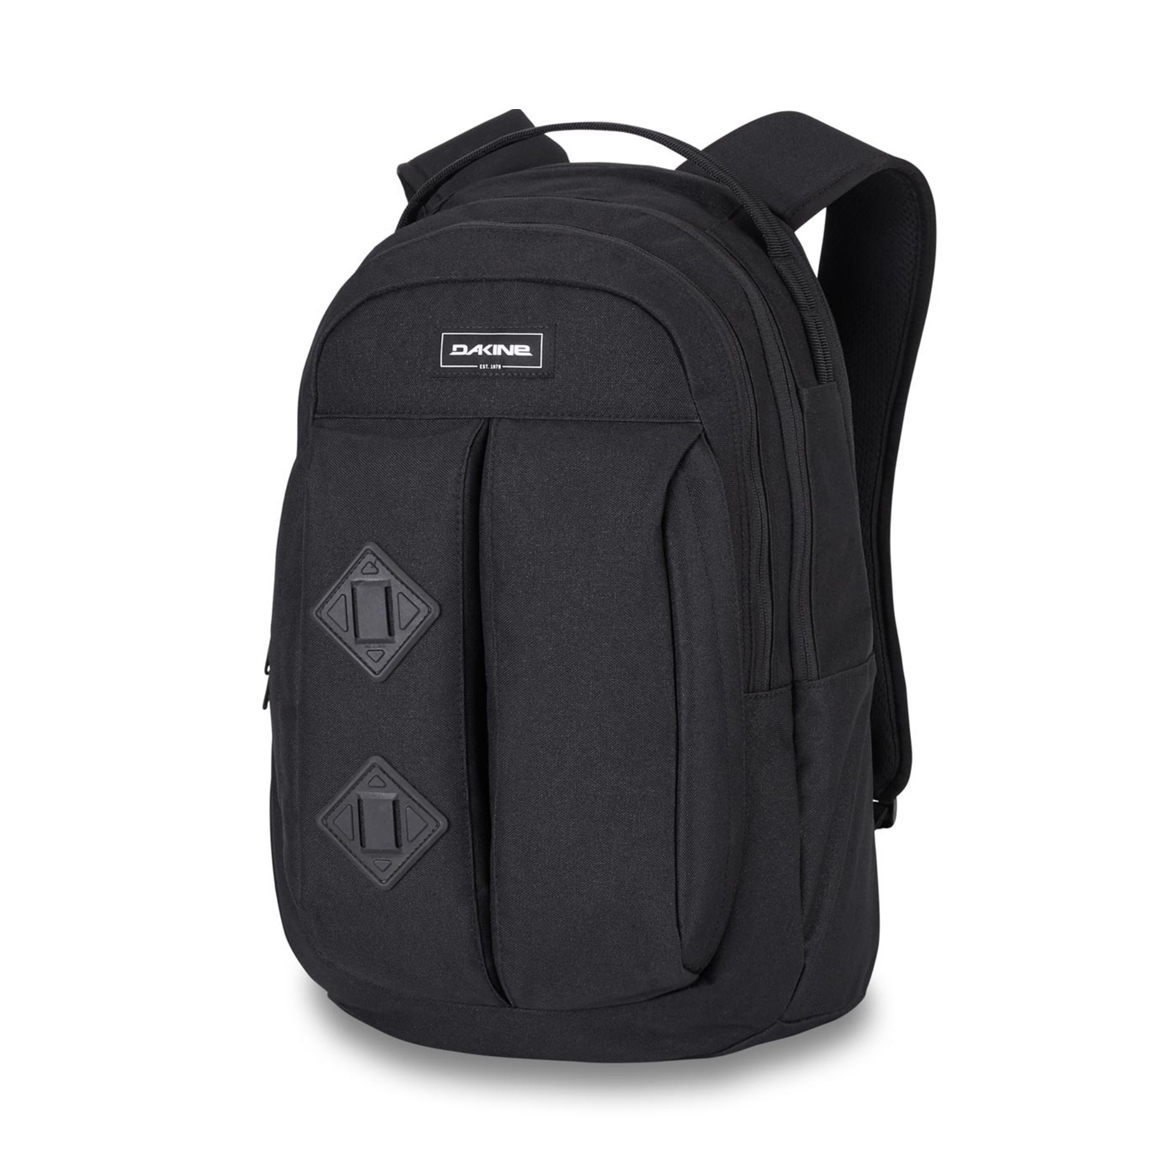 DaKine Mission Surf Backpack – 25 liters / Black